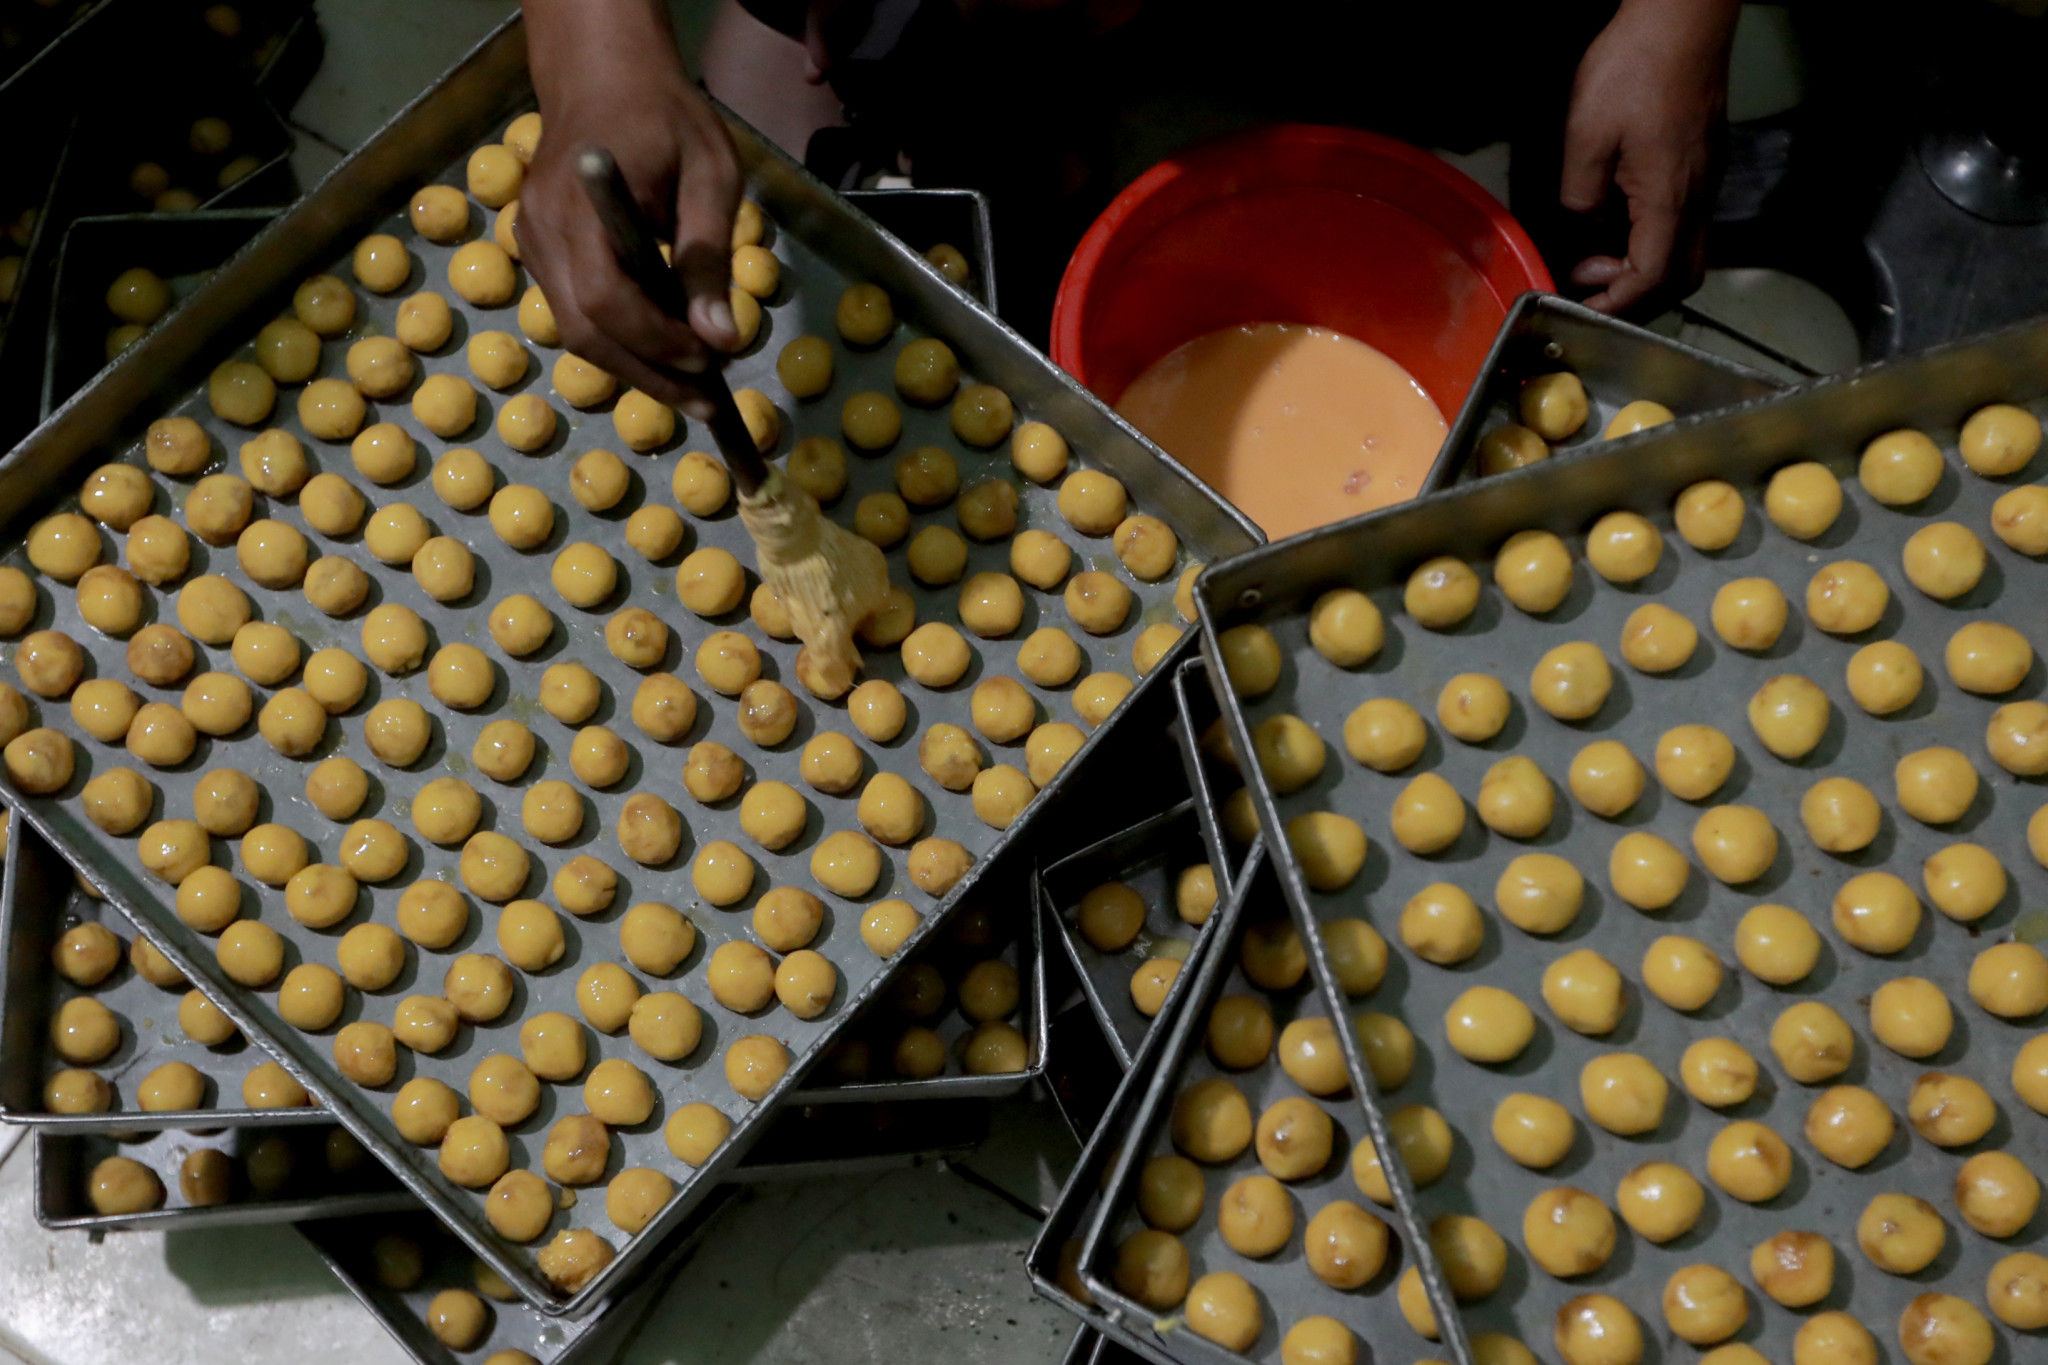 Pekerja menyelesaikan pembuatan kue kering di industri rumahan kawasan Kwitang, Jakarta Pusat, Jum'at, 15 April 2022. Foto: Ismail Pohan/TrenAsia